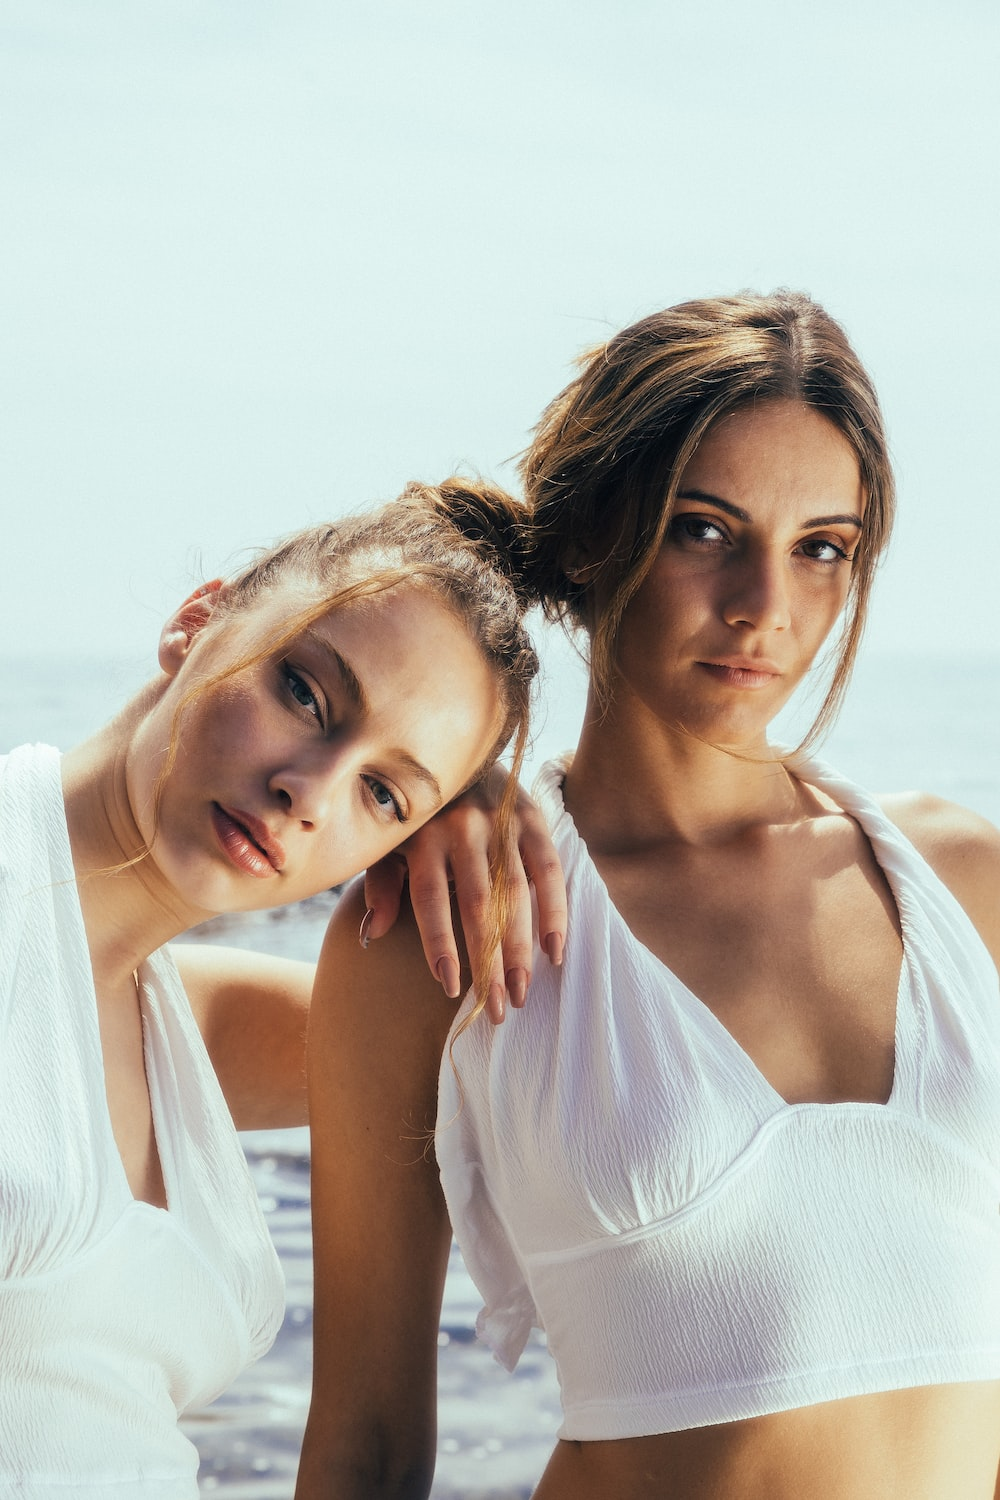 Two girls posing in white